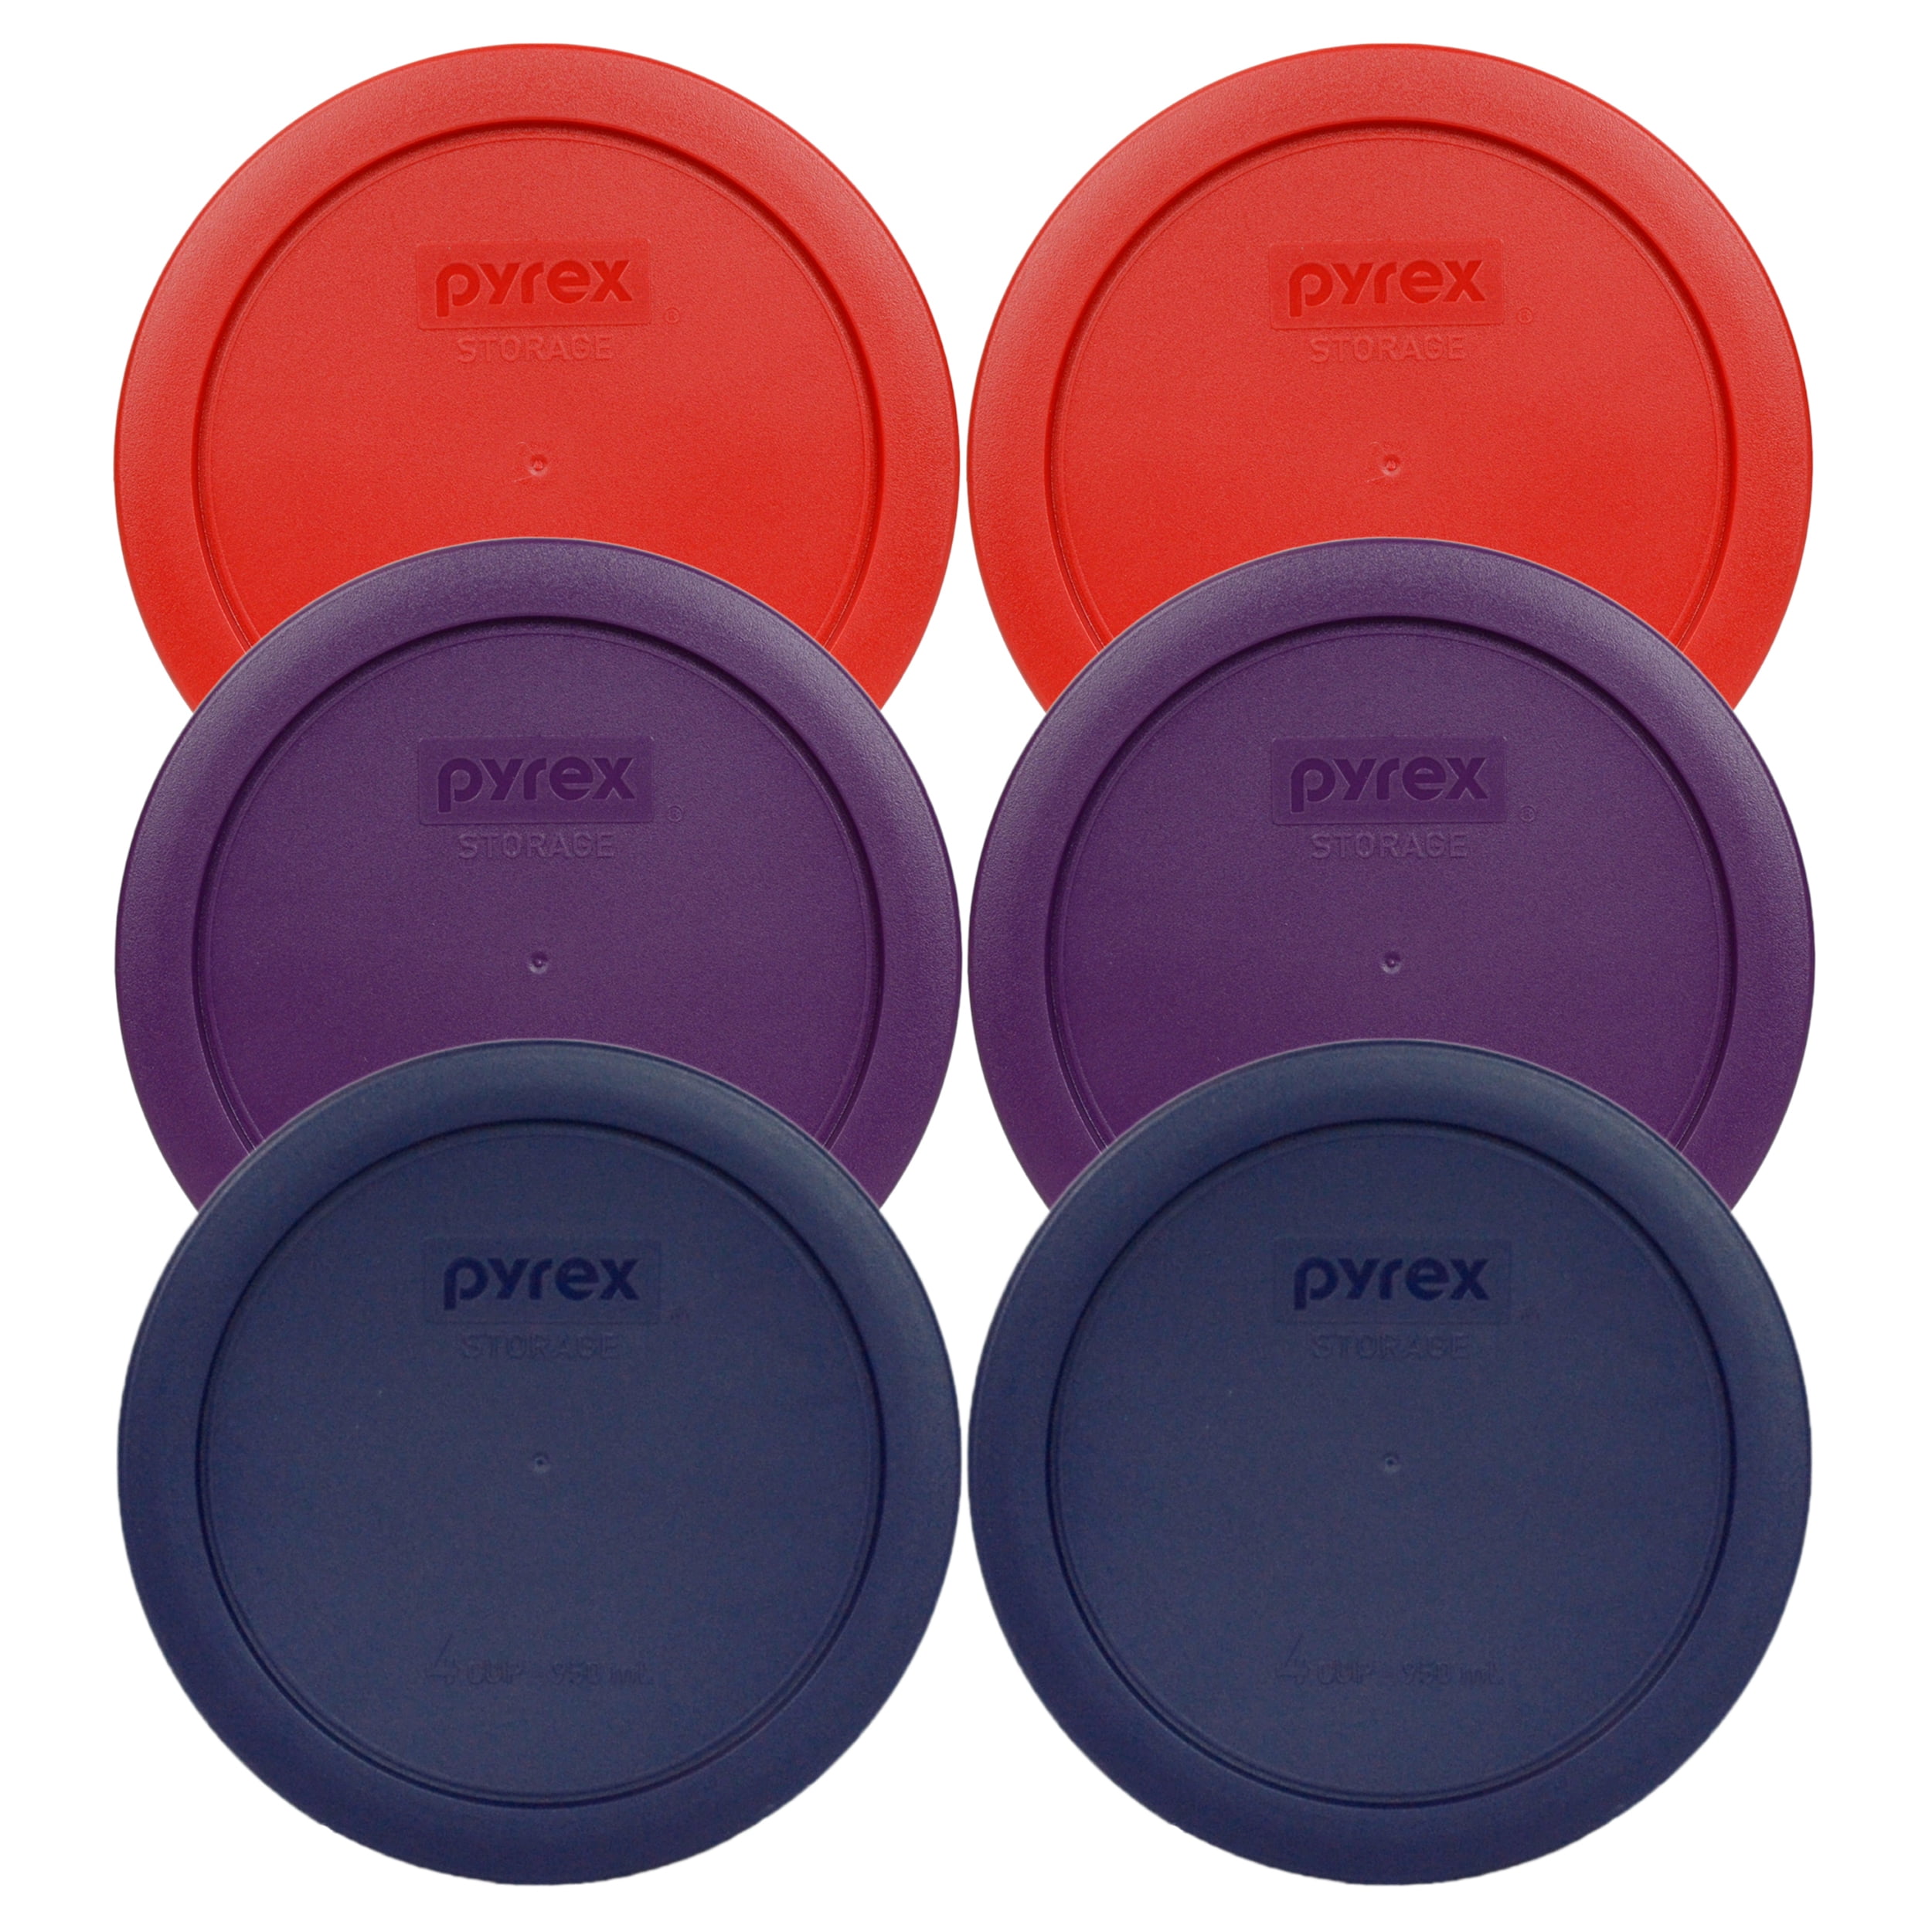 Pyrex (1) 7201 4-Cup Glass Bowl & (1) 7201-PC Sapphire Blue Lid